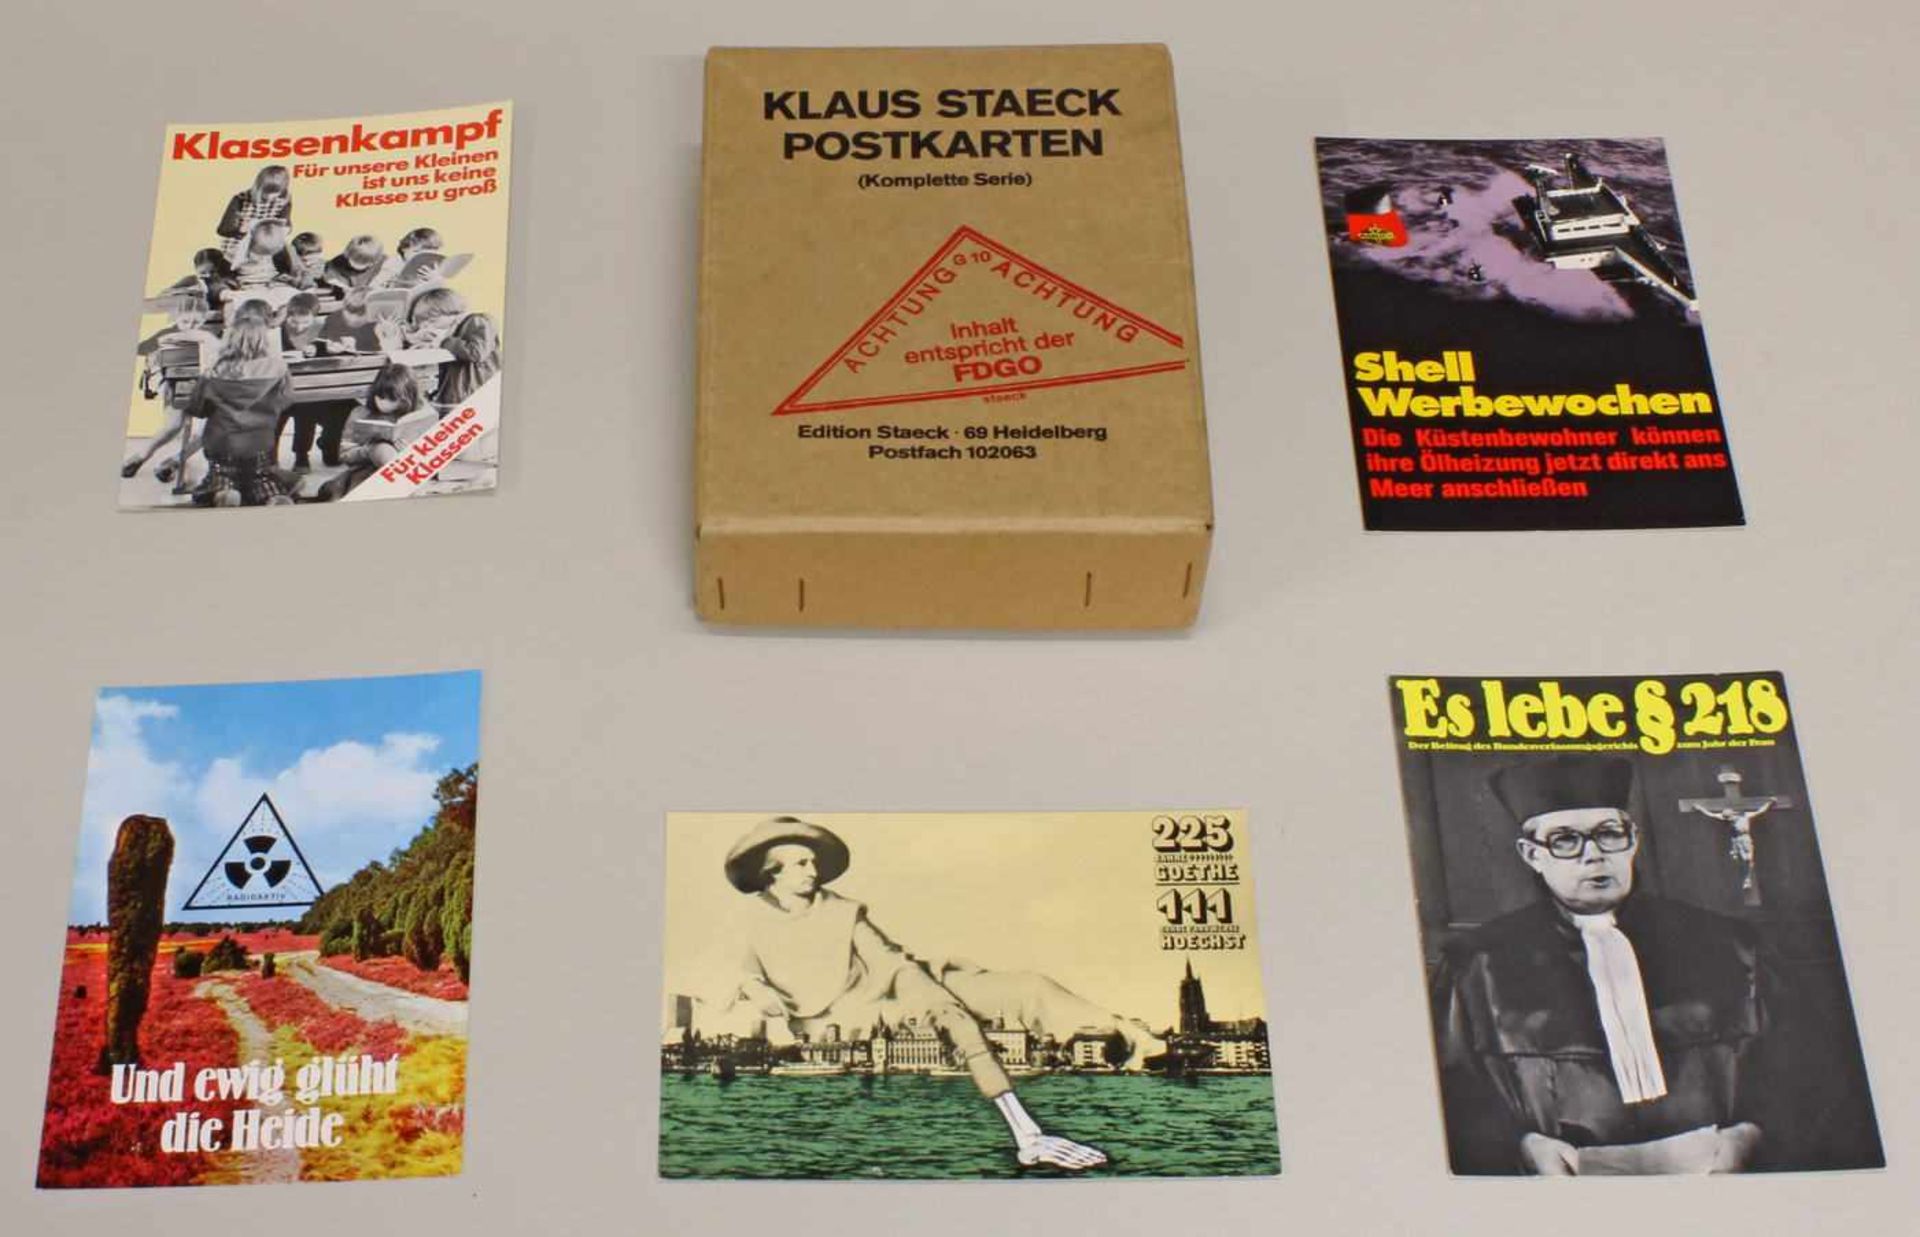 "Klaus Staeck Postkarten", Edition Staeck, Heidelberg, ca. 95 Grafik-Postkarten, im Original-Karton